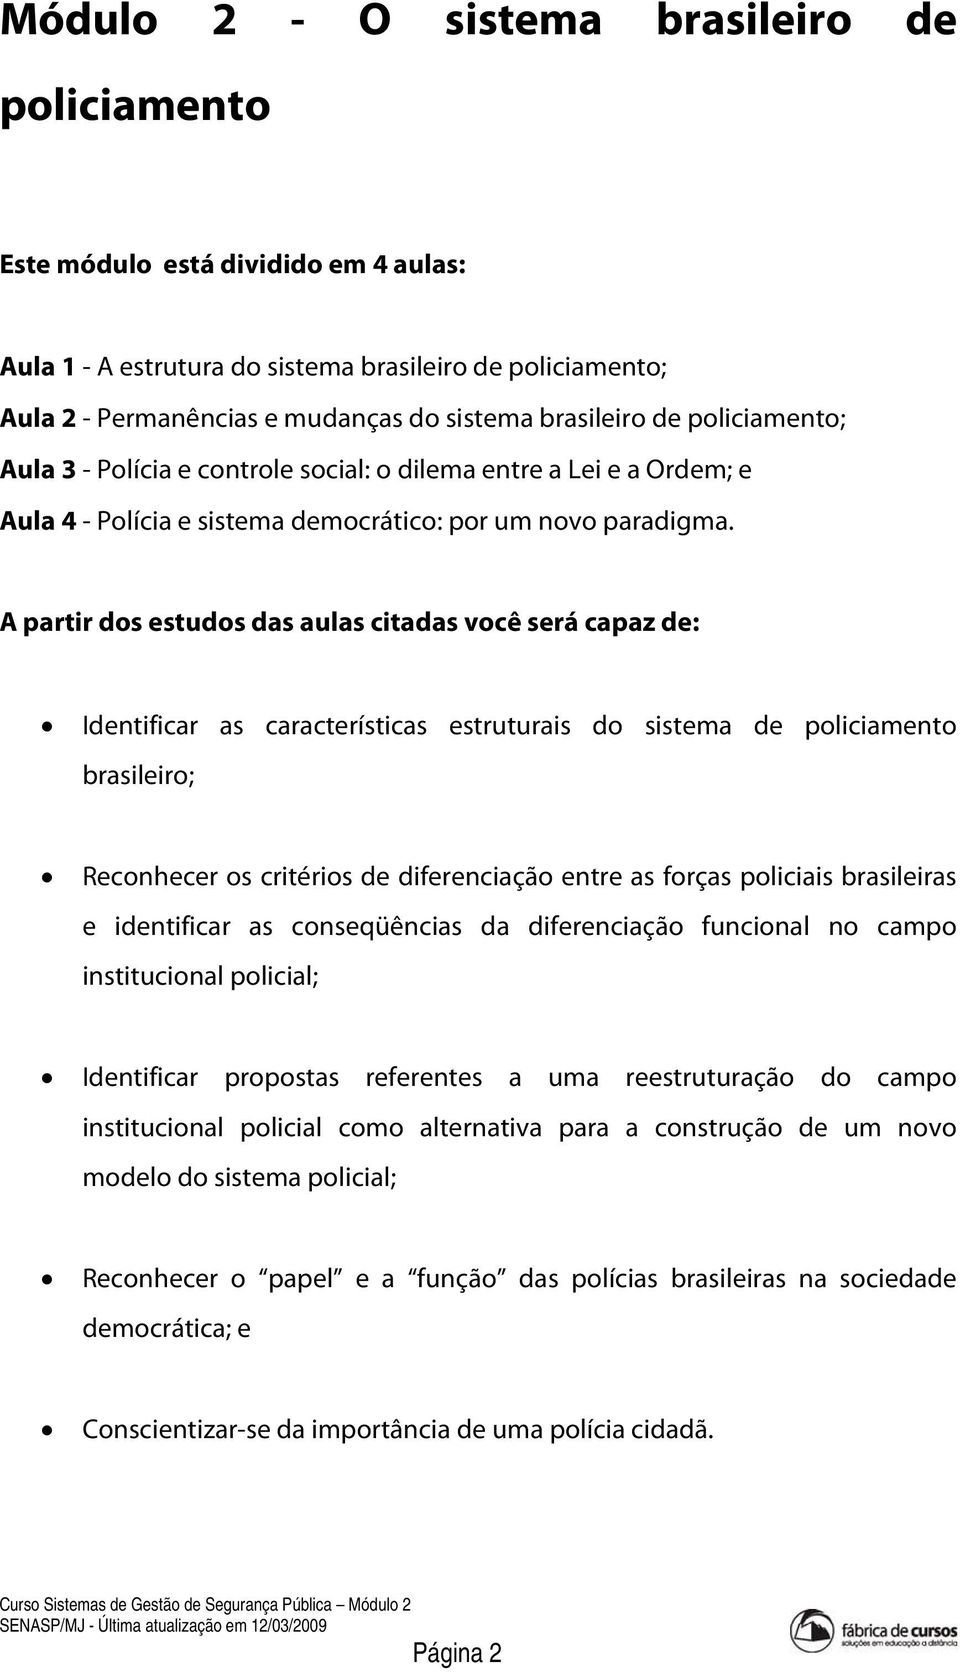 A partir dos estudos das aulas citadas você será capaz de: Identificar as características estruturais do sistema de policiamento brasileiro; Reconhecer os critérios de diferenciação entre as forças